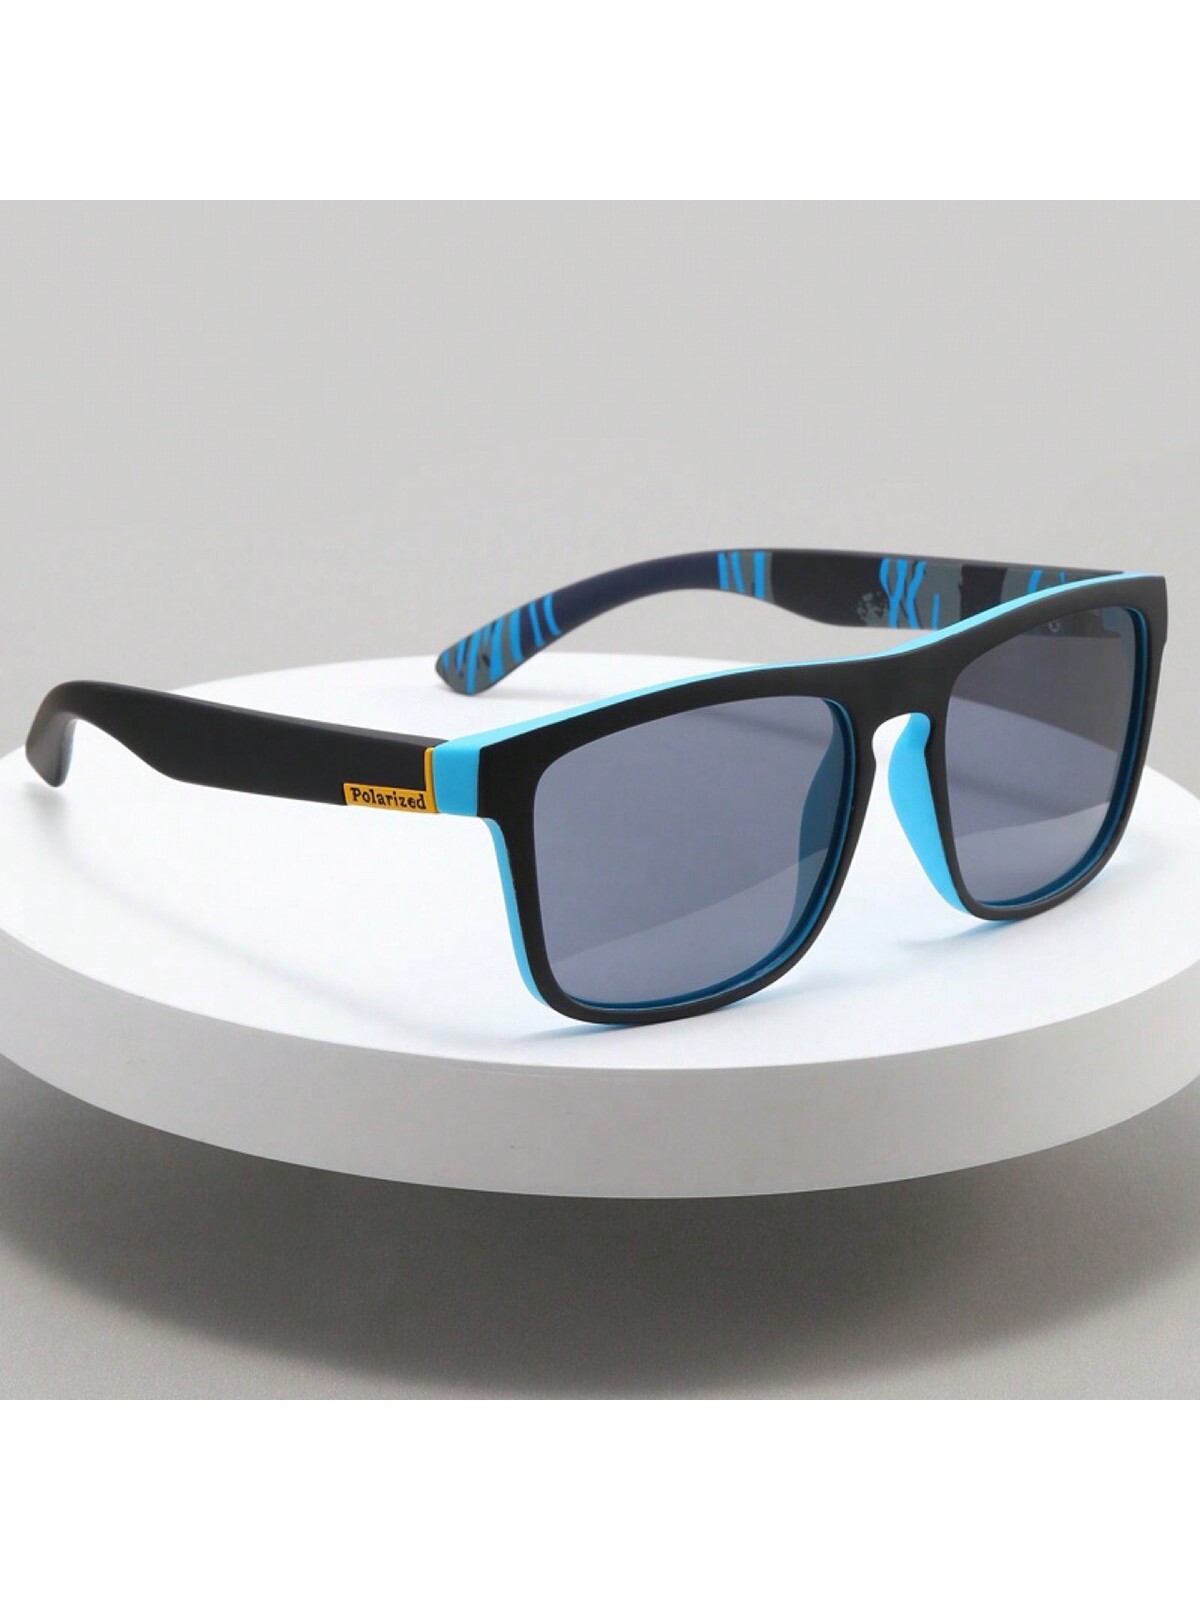 Поляризованные солнцезащитные очки D731 для спорта 1 шт мужские поляризованные солнцезащитные очки многоцветный